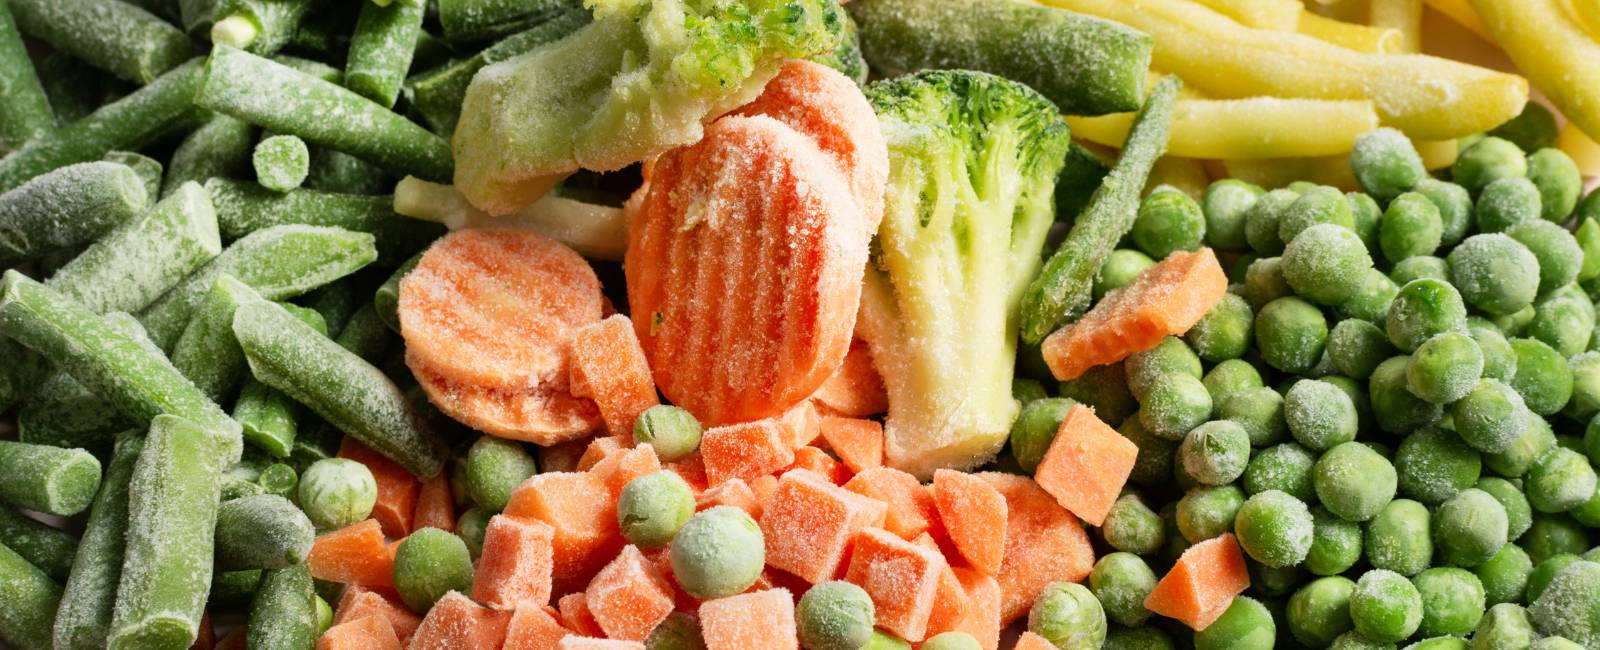 Frutas y verduras congeladas: ¿Realmente son buenas?